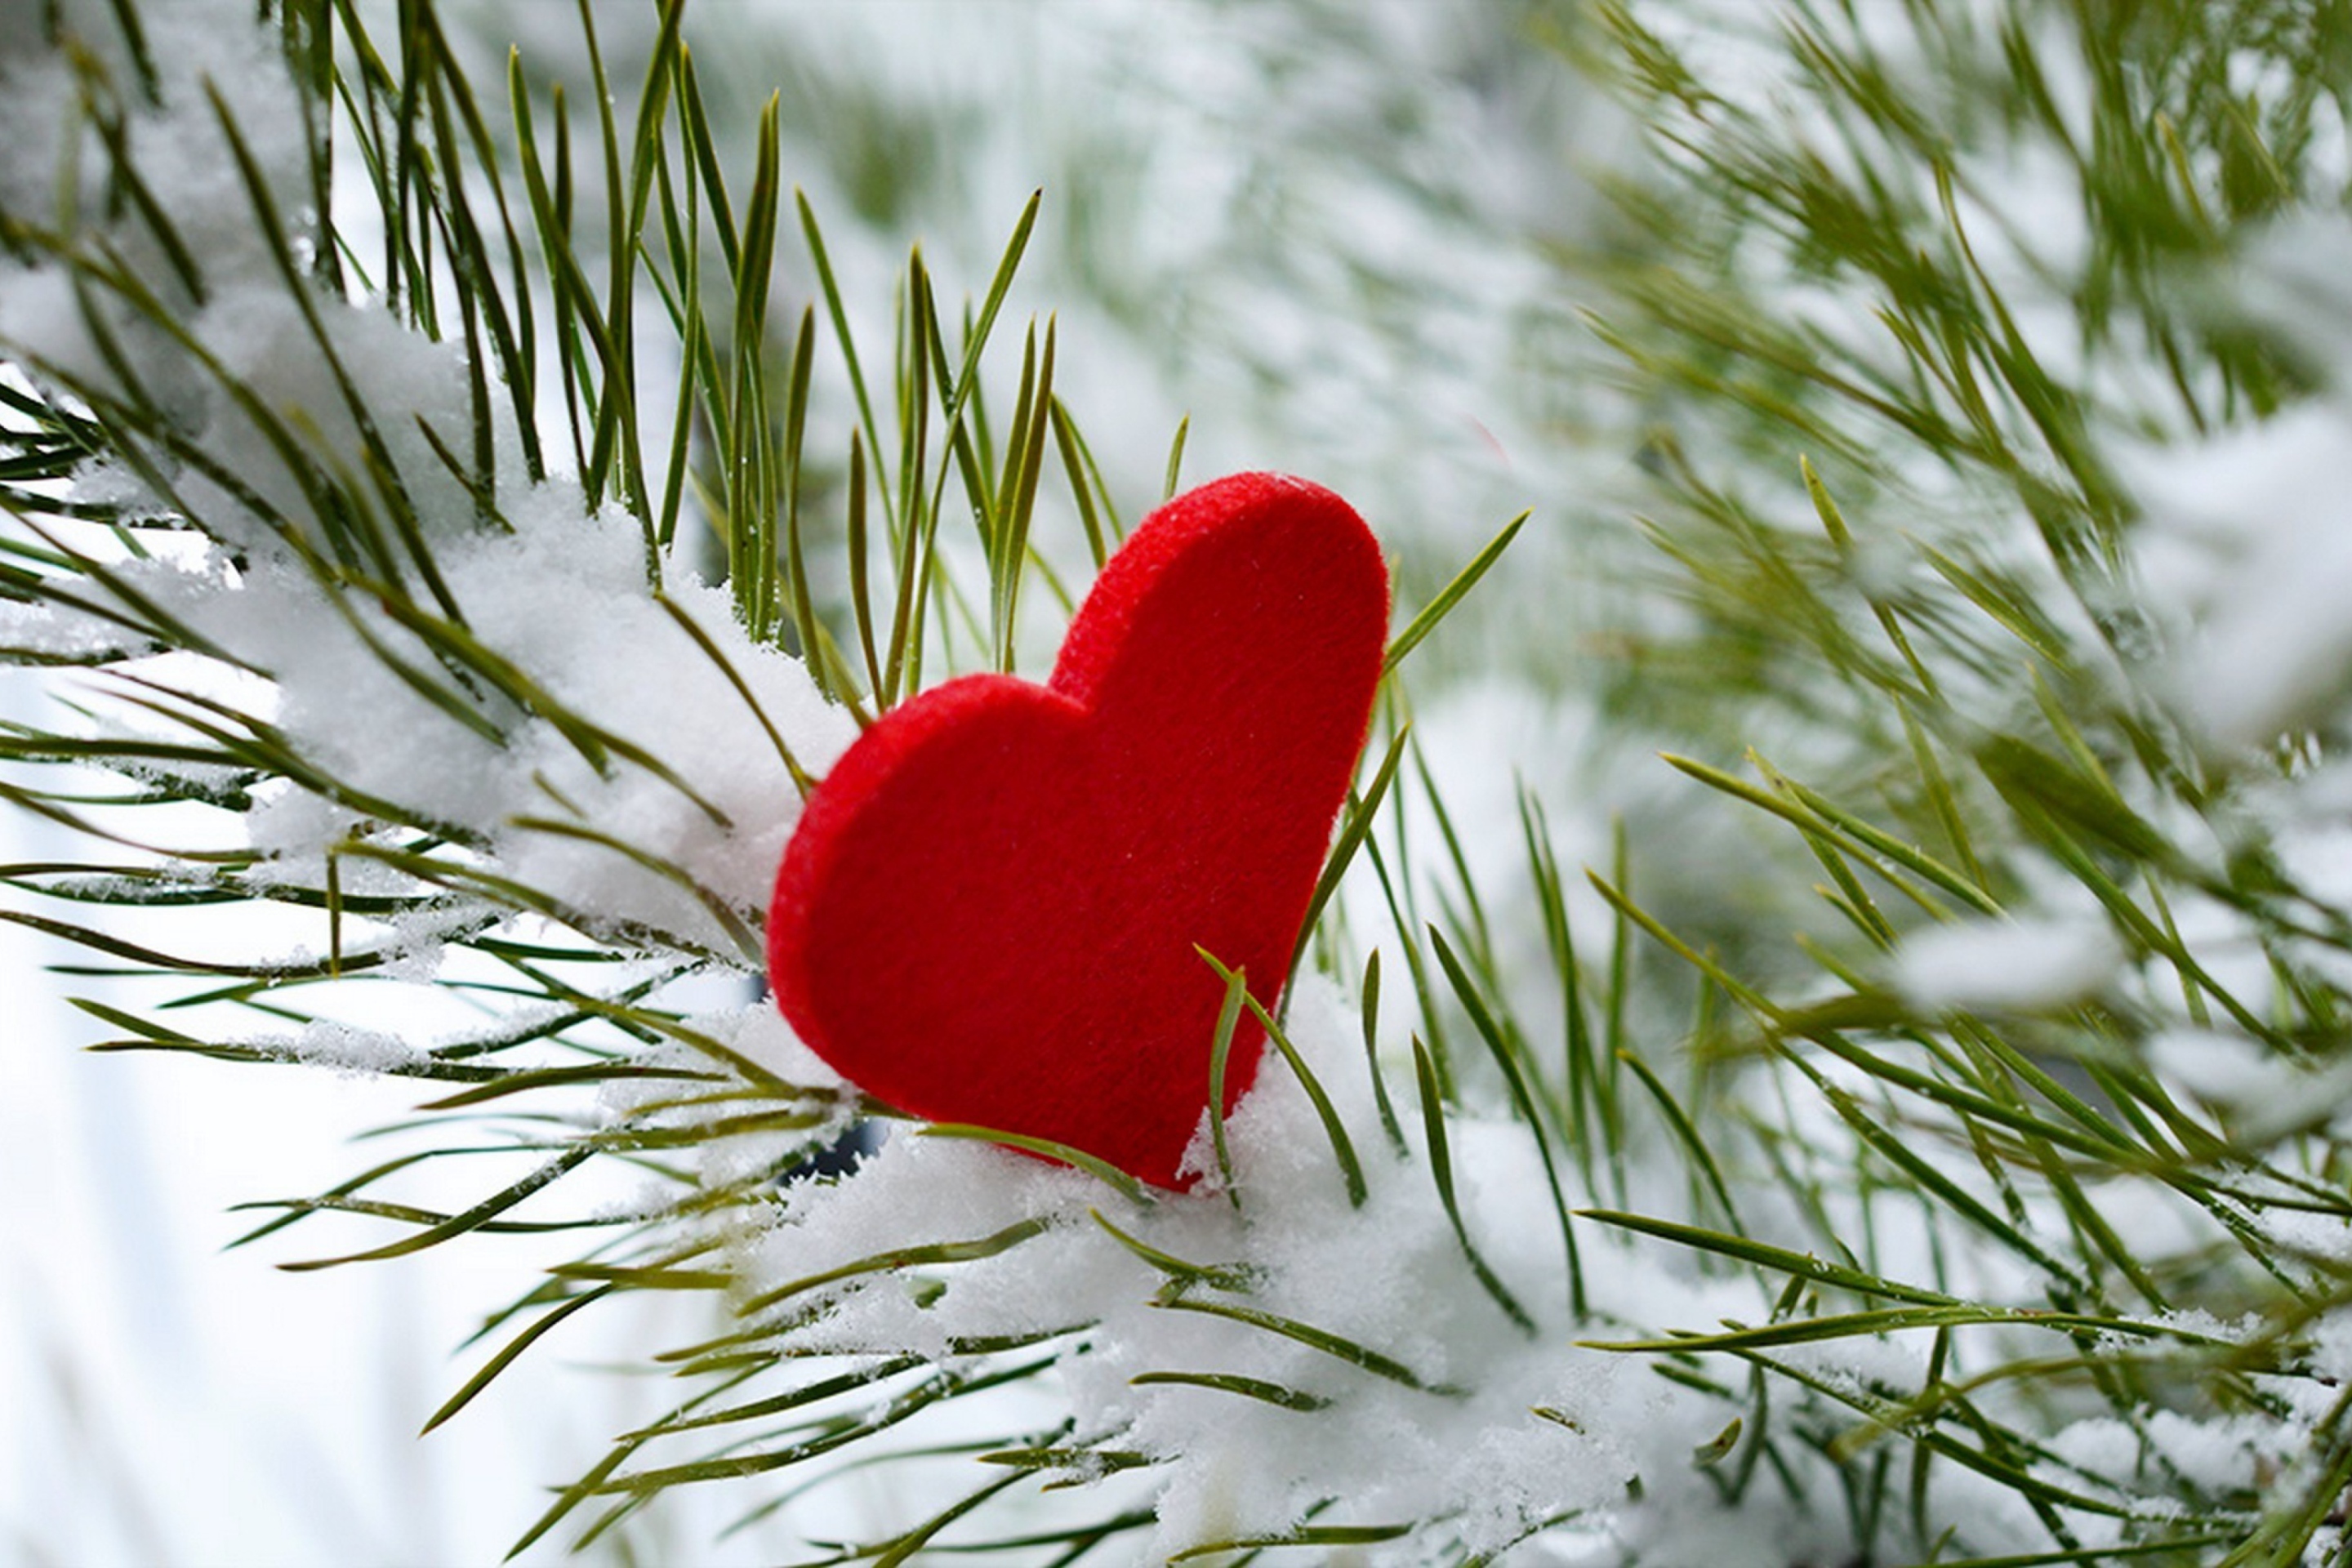 Обои Last Christmas I Gave You My Heart 2880x1920